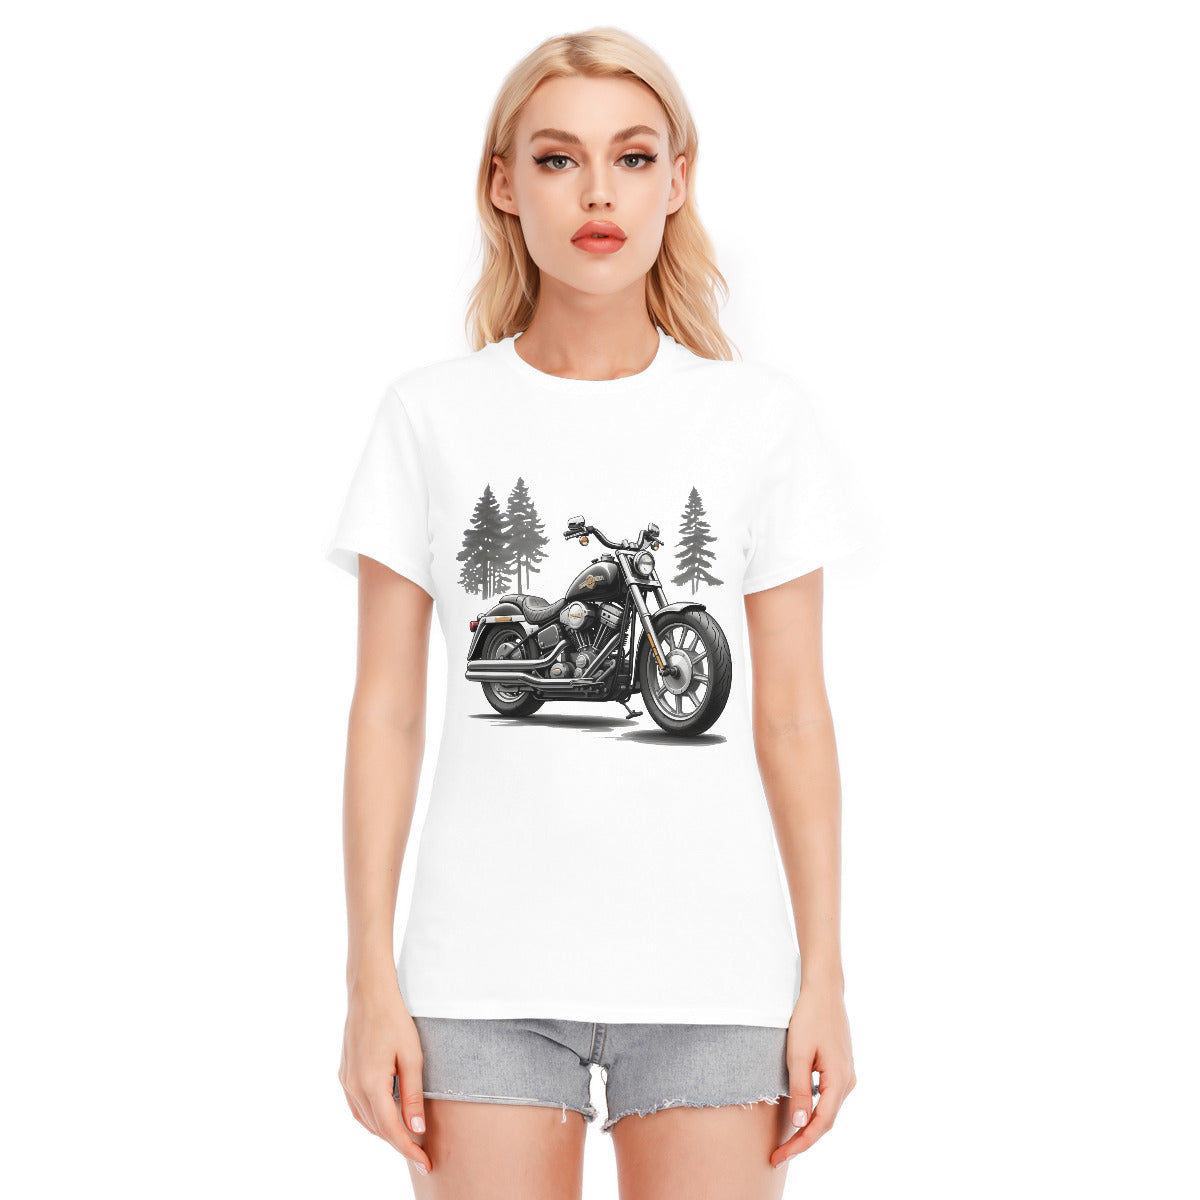 Motorcycle 108 -- Unisex O-neck Short Sleeve T-shirt